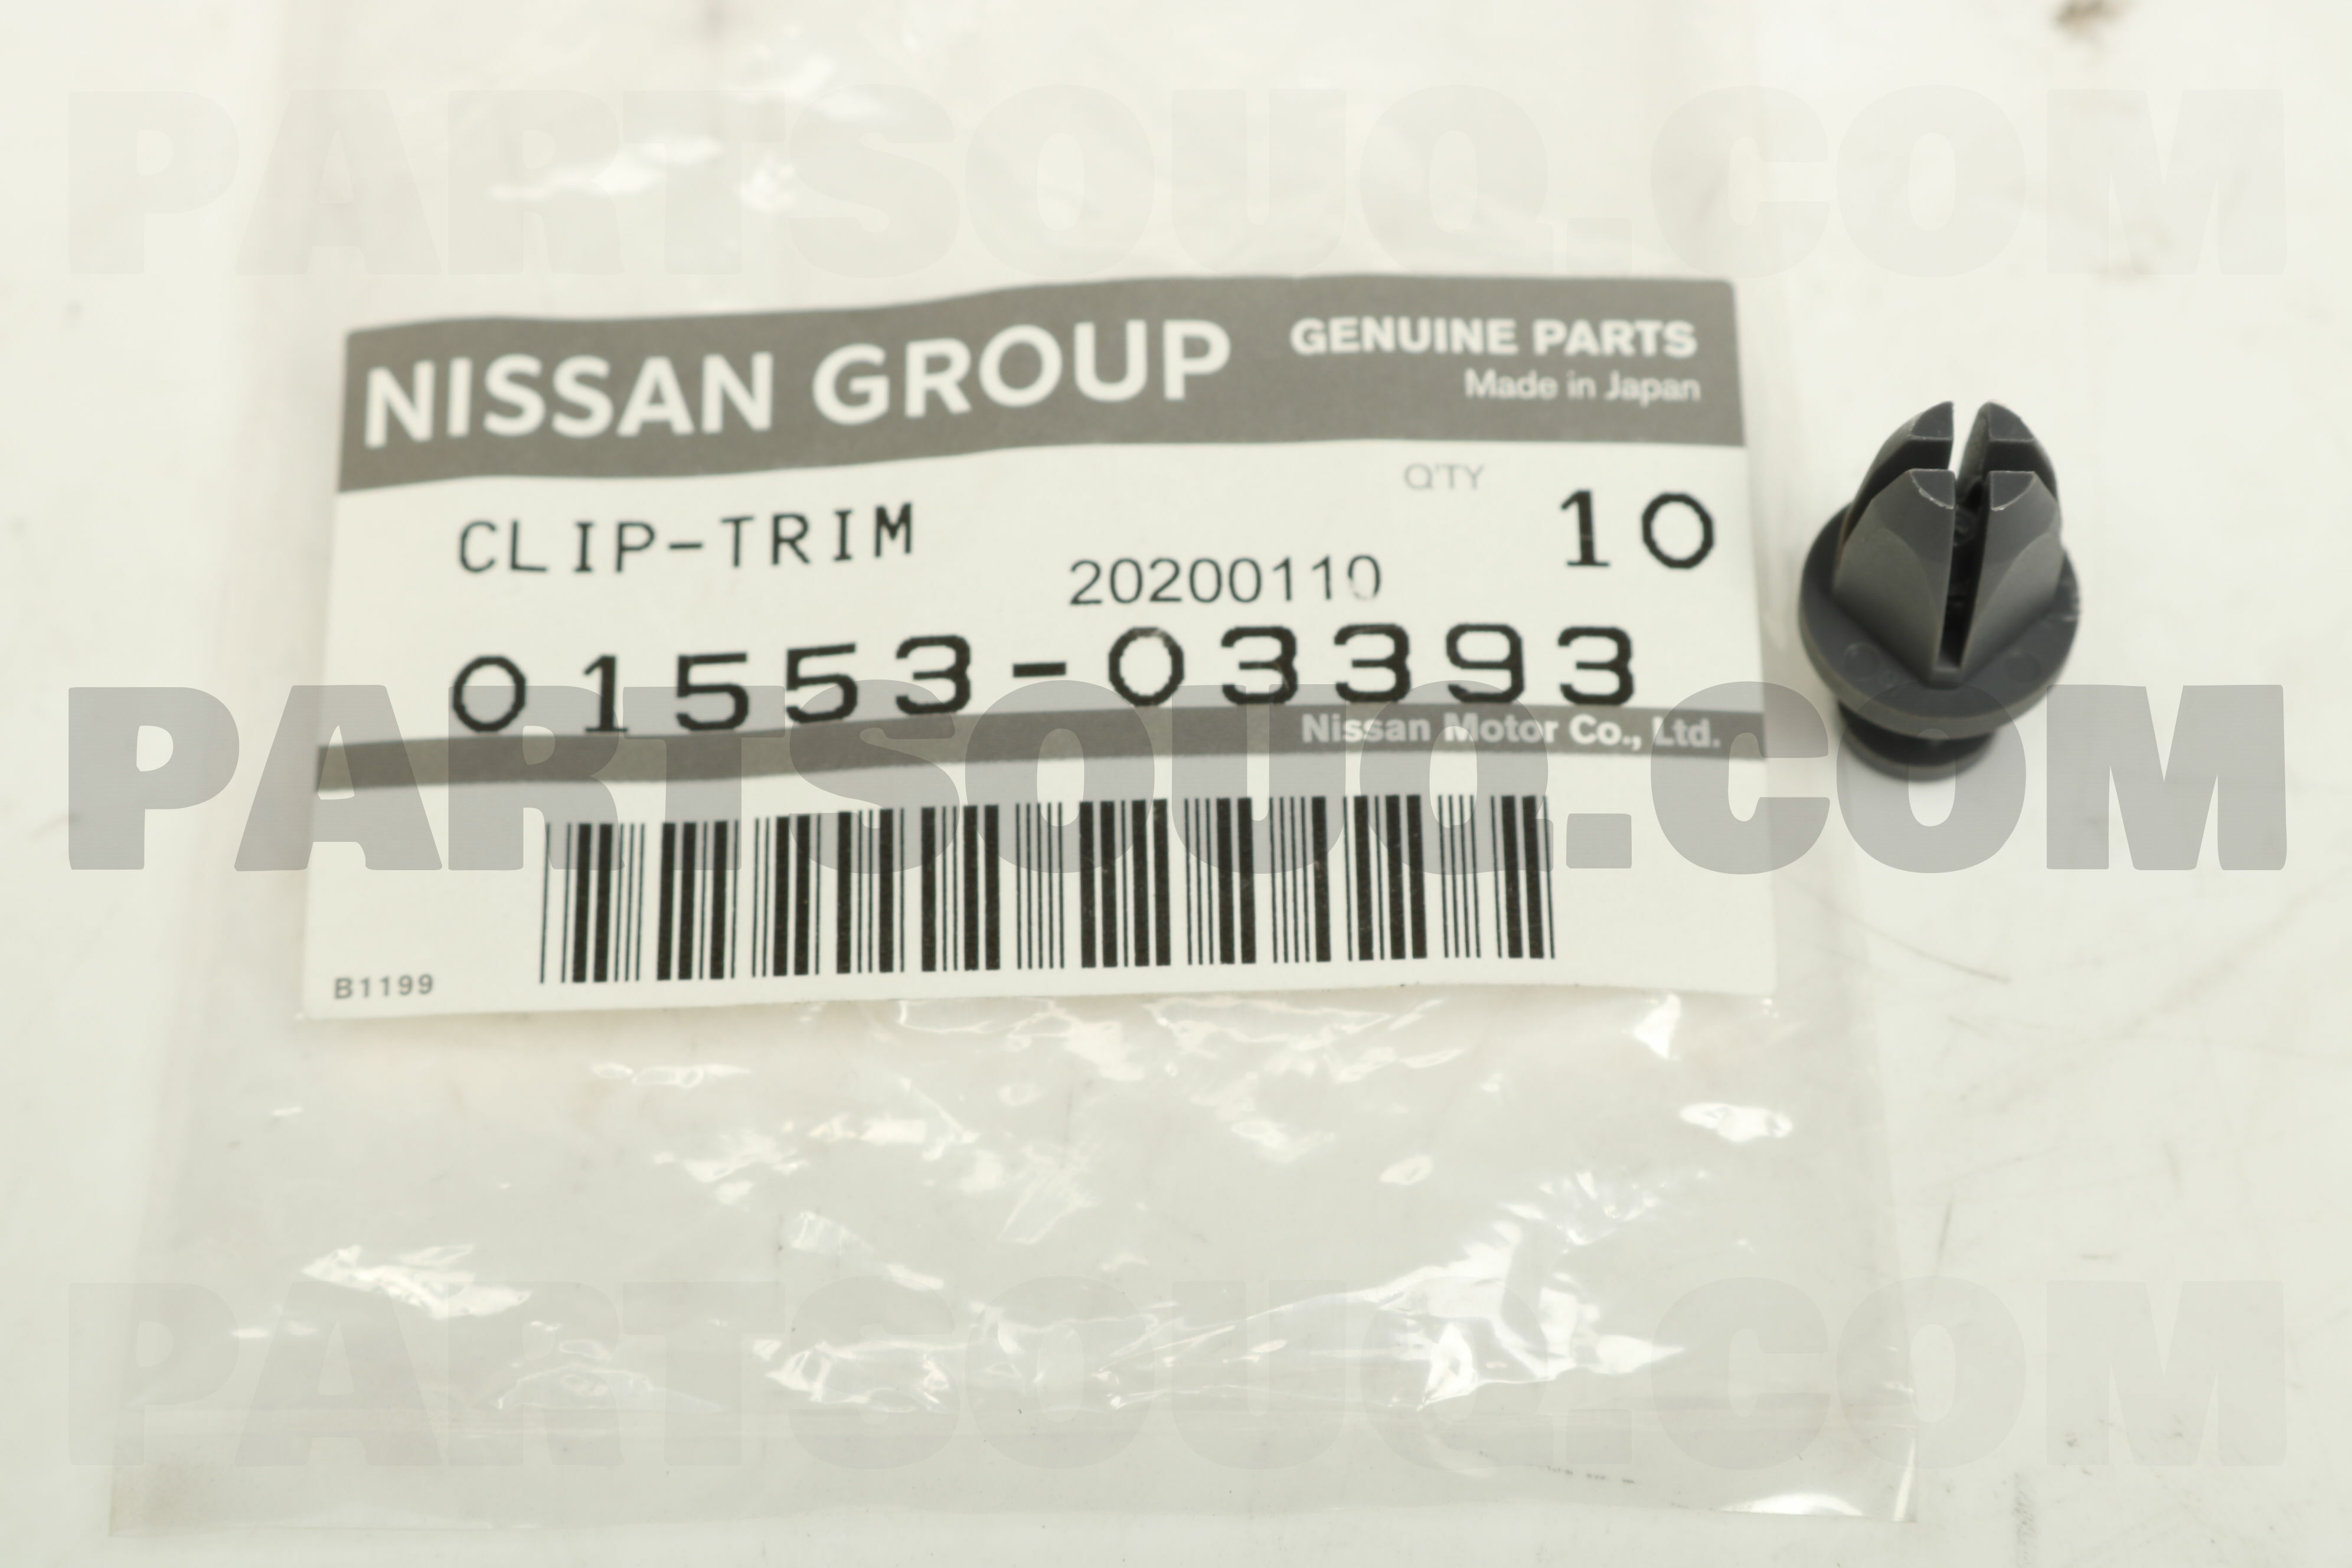 CLIP 0155305393, Nissan Parts